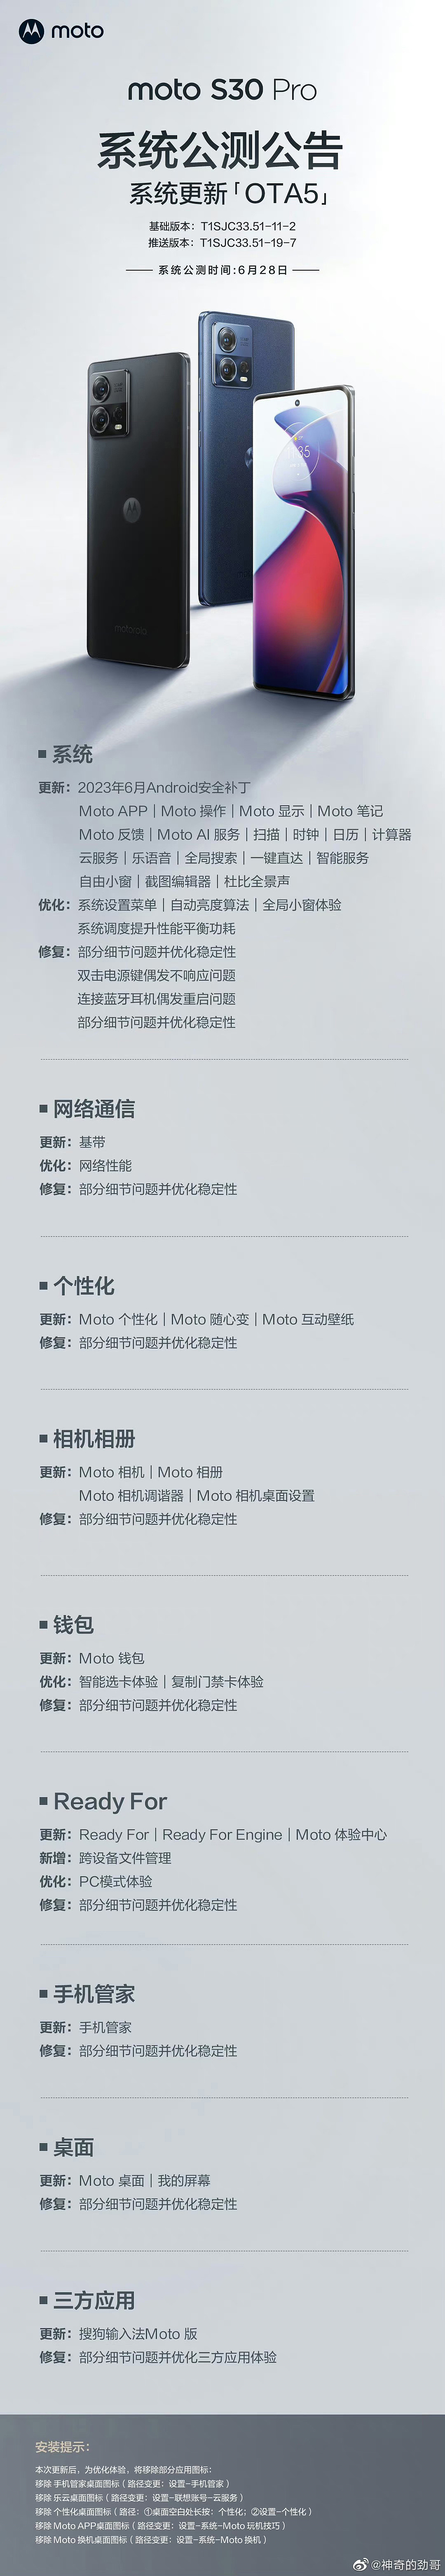 摩托罗拉 S30 Pro 手机获推 MYUI5.0 系统更新：优化桌面、相机相册等使用体验 - 1